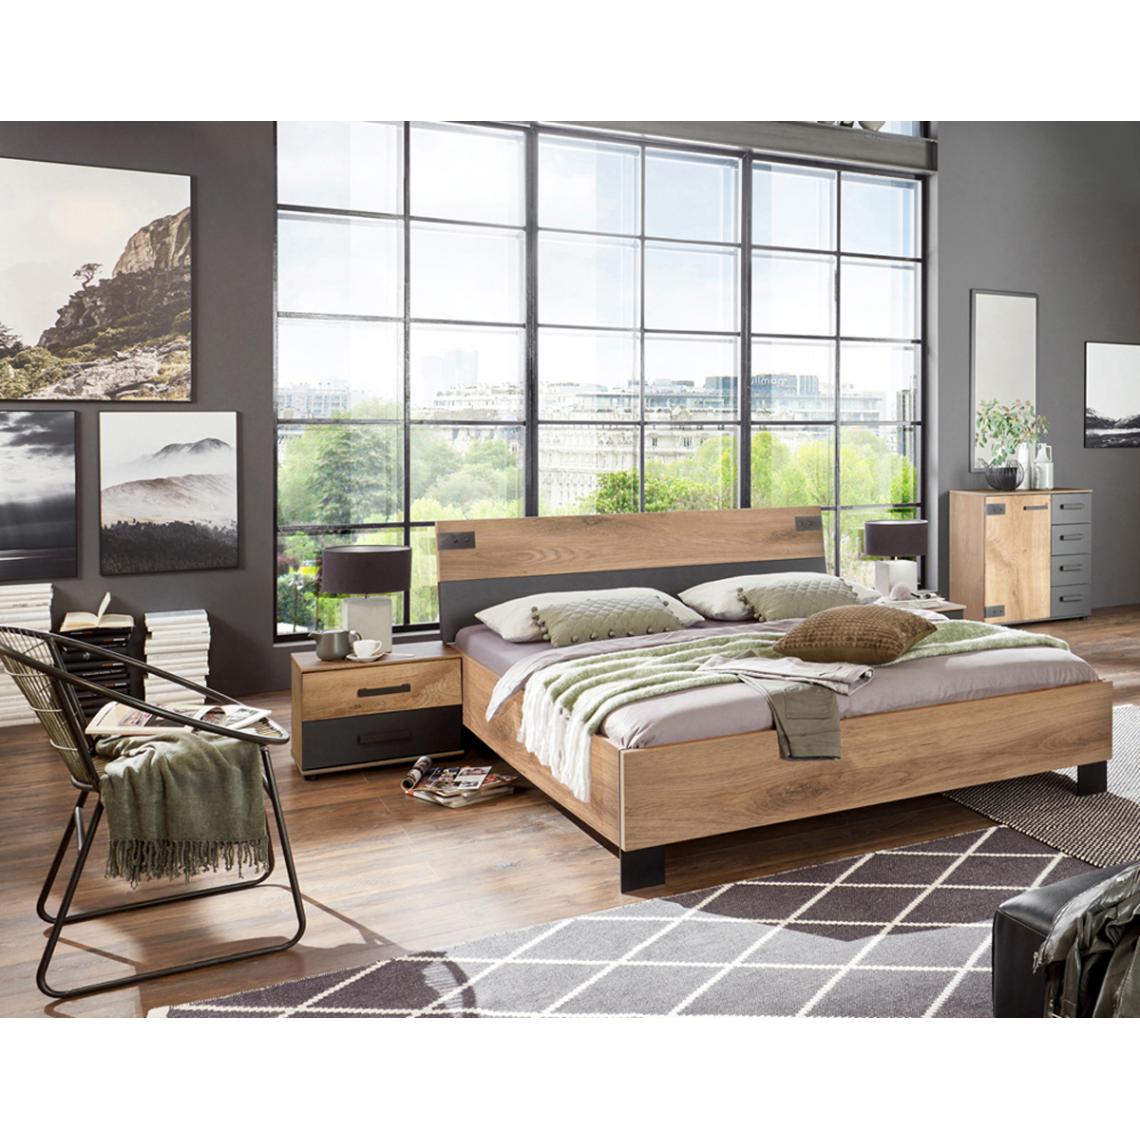 Pegane - Chambre à coucher complète adulte (lit 140x200 cm + 2 chevets + commode) coloris chêne foncé - Chambre complète